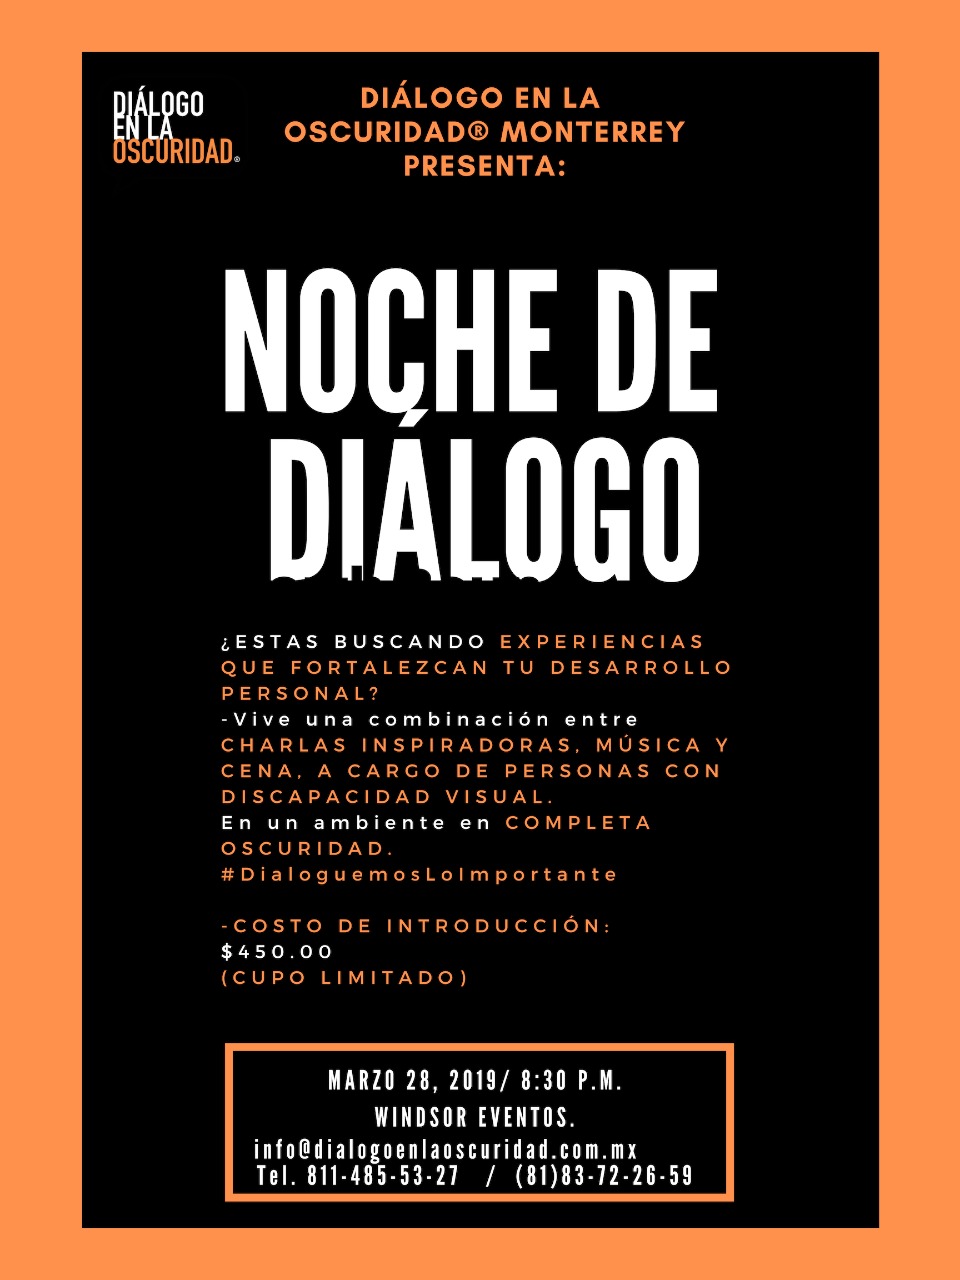 Noches de Diálogo: conferencias inspiradoras en la oscuridad – marzo 28